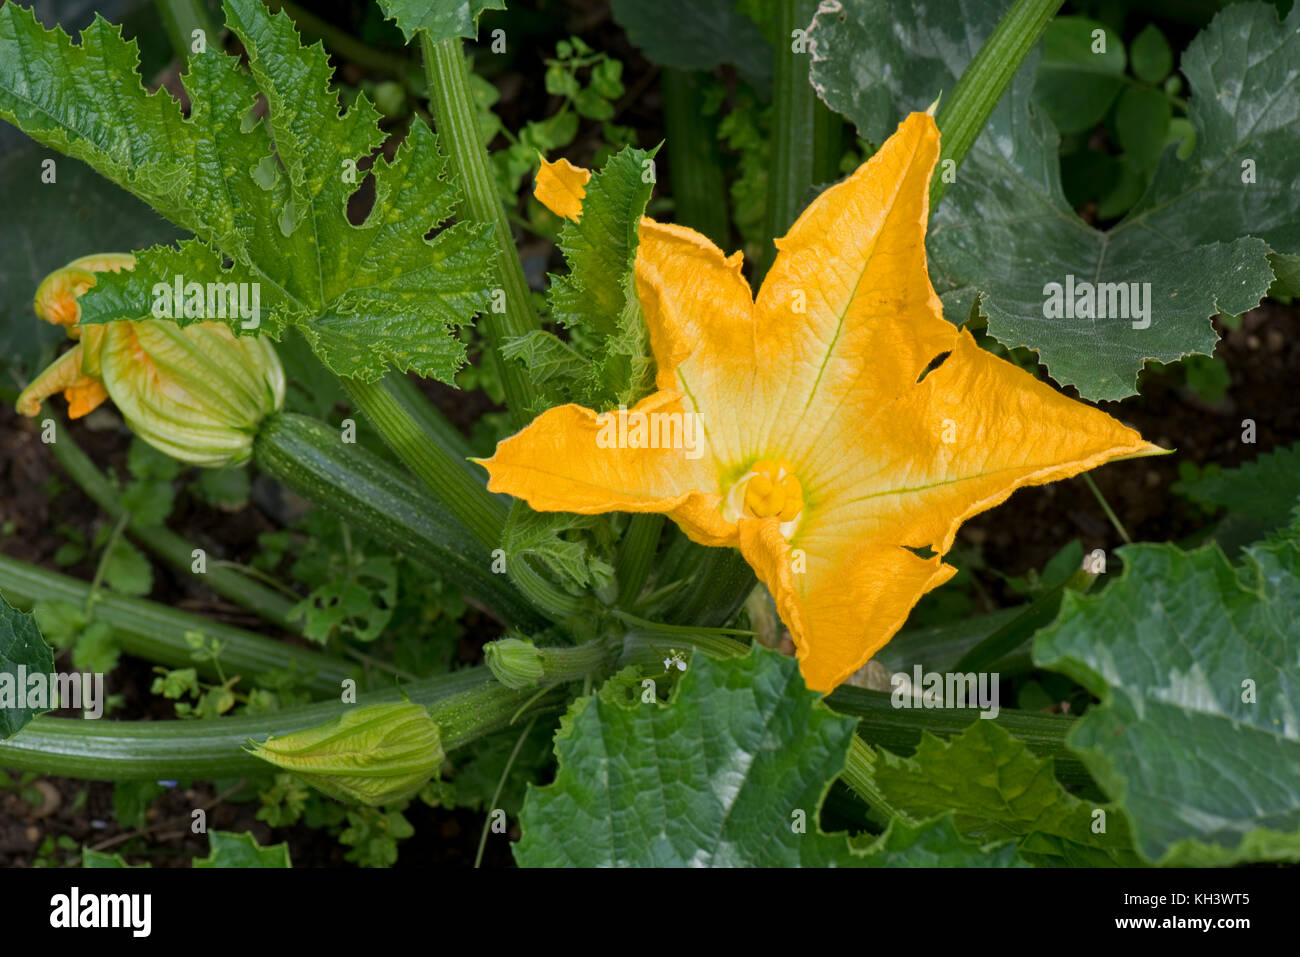 Les fleurs mâles et femelles jaune sur un plant de courgette courgette ou avec les jeunes les fruits sous bold type cucurbitacées feuilles vert foncé Banque D'Images